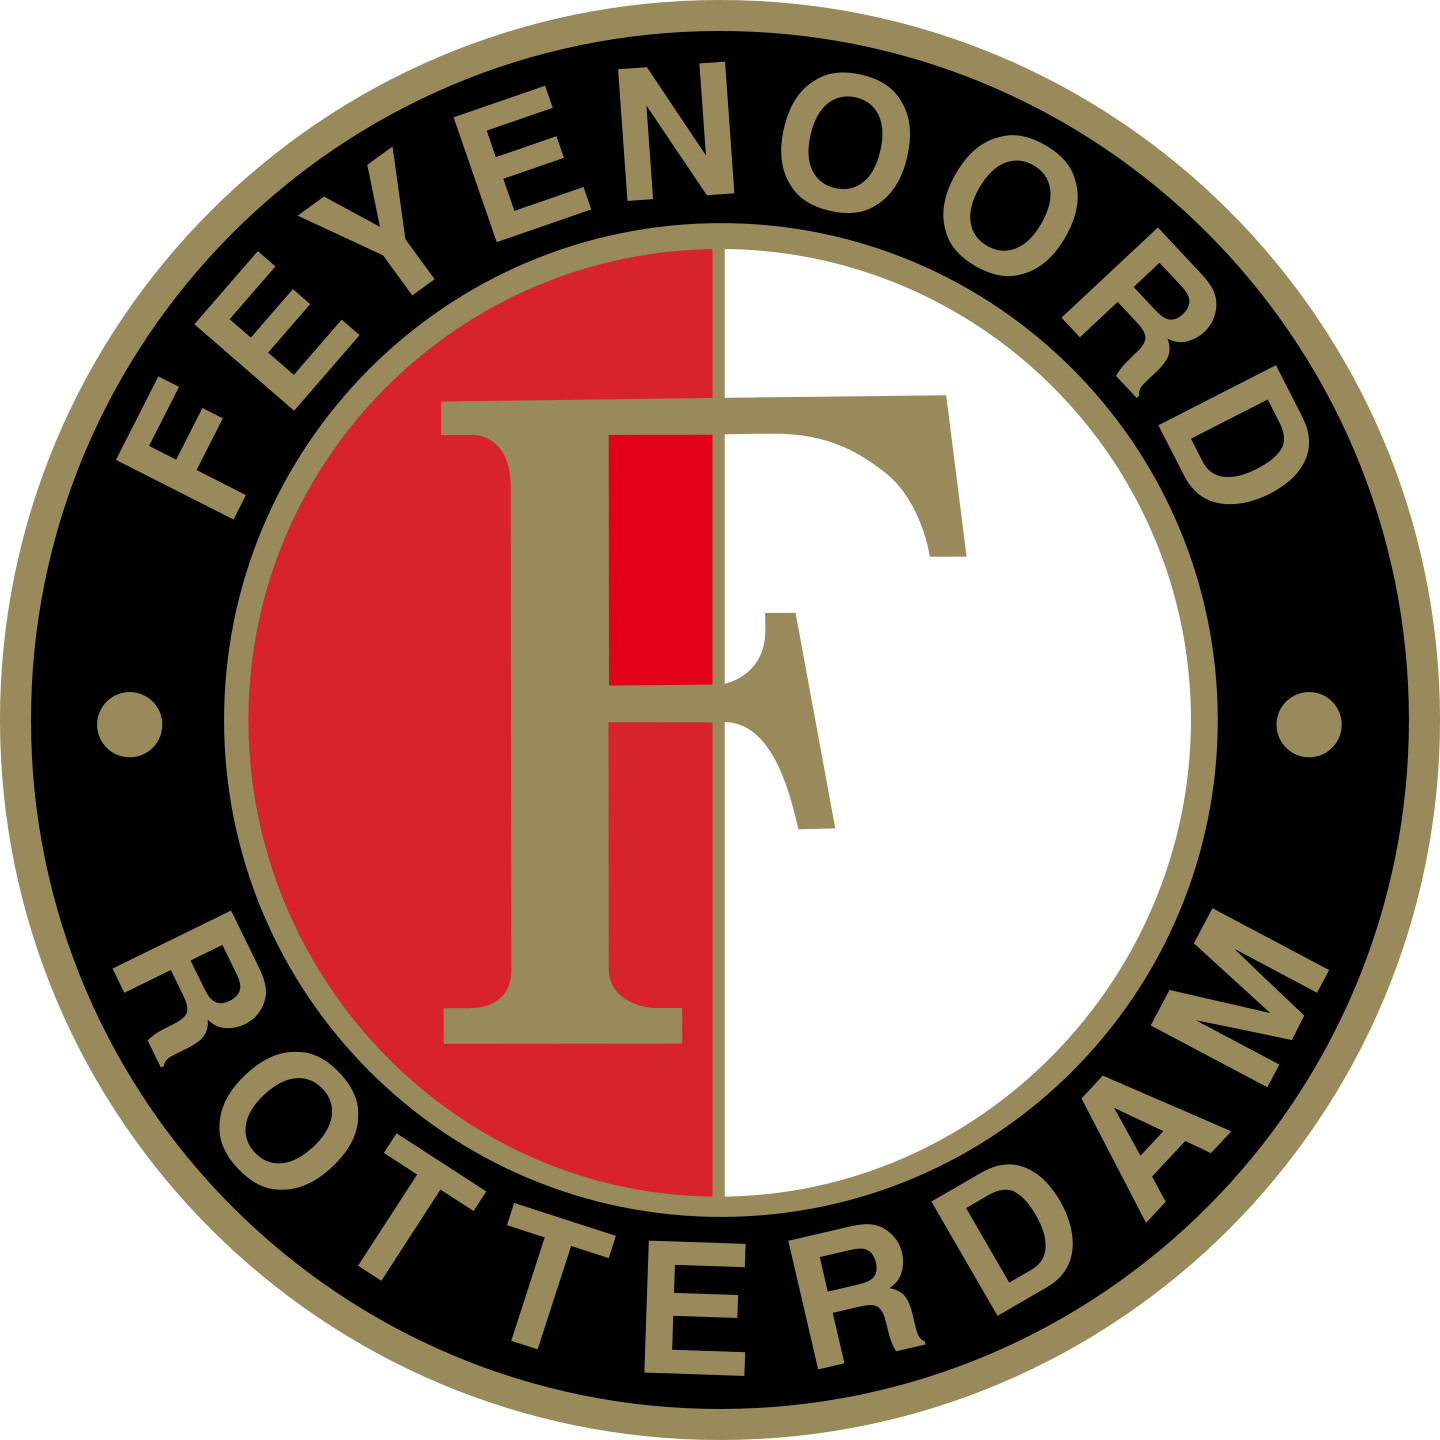 feyenoord logo 2 - Feyenoord Rotterdam Logo